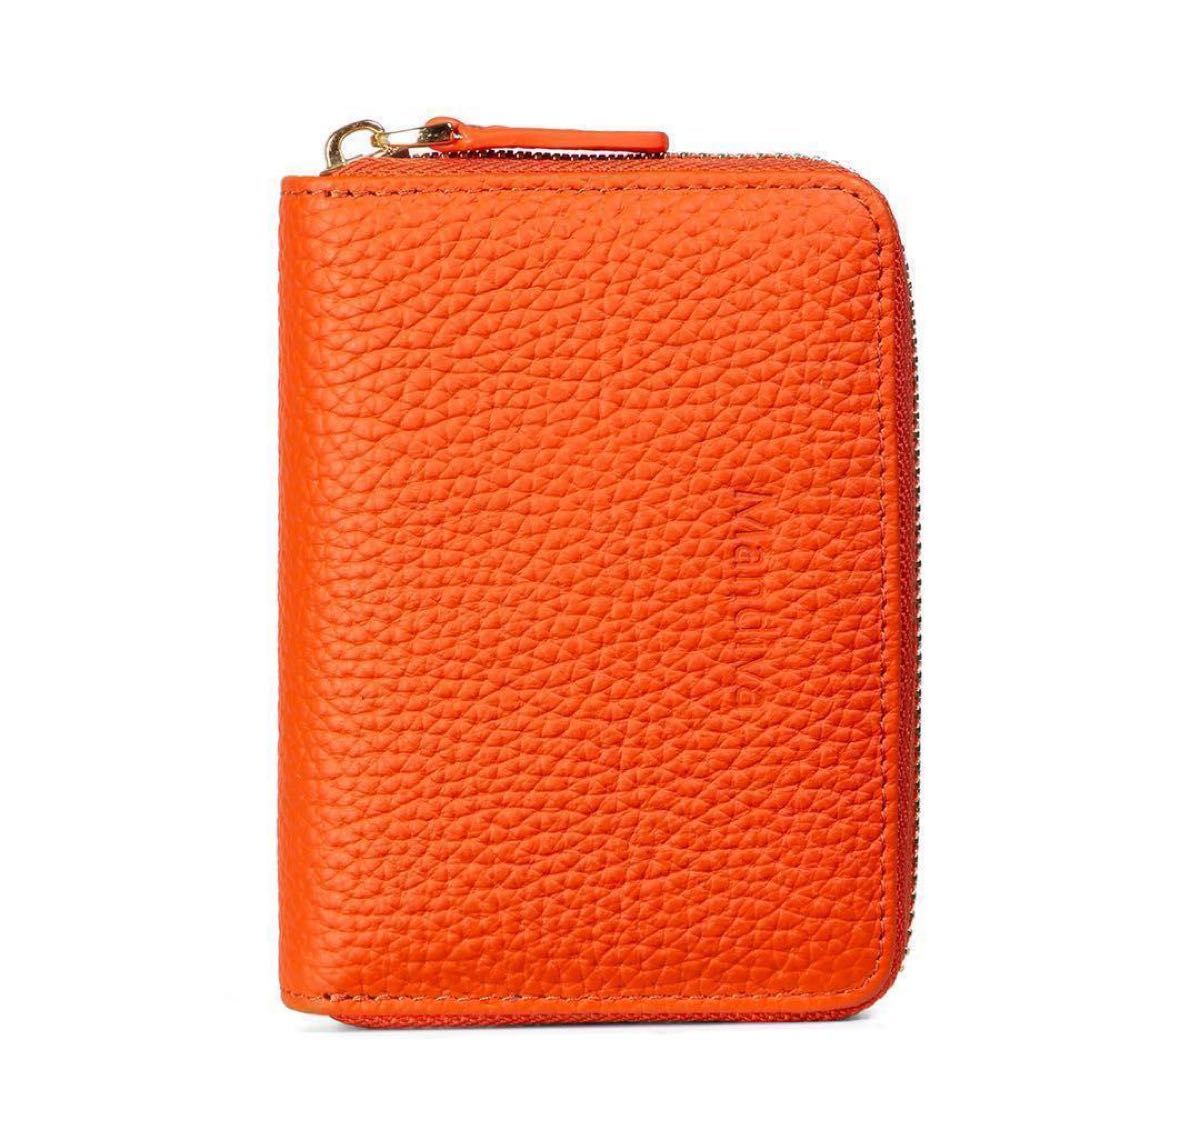 財布 レディース ミニ財布 オレンジ ラウンドファスナー コインケース 本革 カードケース スキミング防止 コインケース